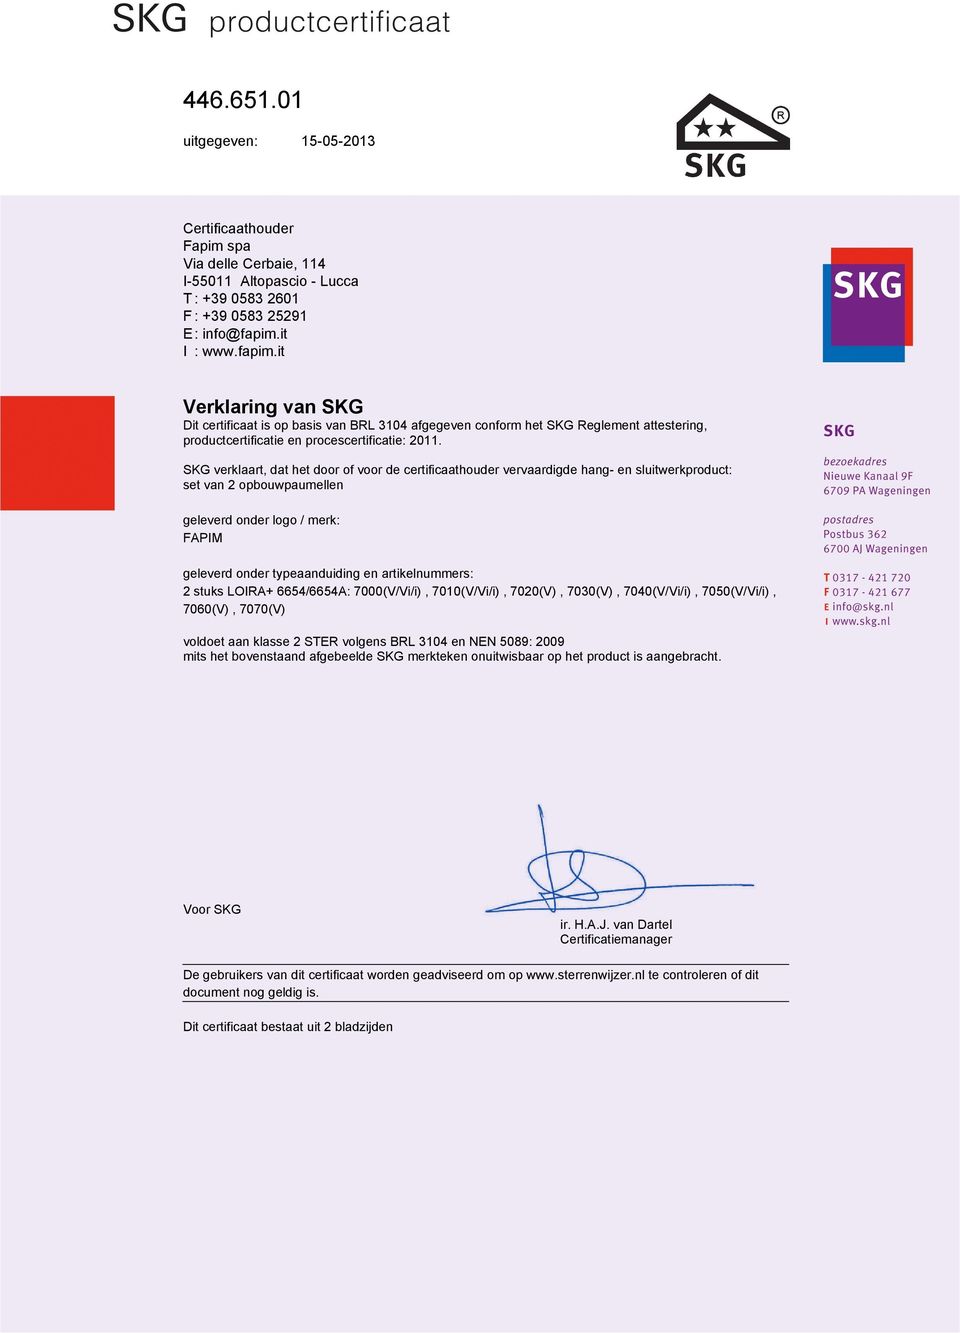 SKG verklaart, dat het door of voor de certificaathouder vervaardigde hang- en sluitwerkproduct: set van 2 opbouwpaumellen geleverd onder logo / merk: FAPIM geleverd onder typeaanduiding en